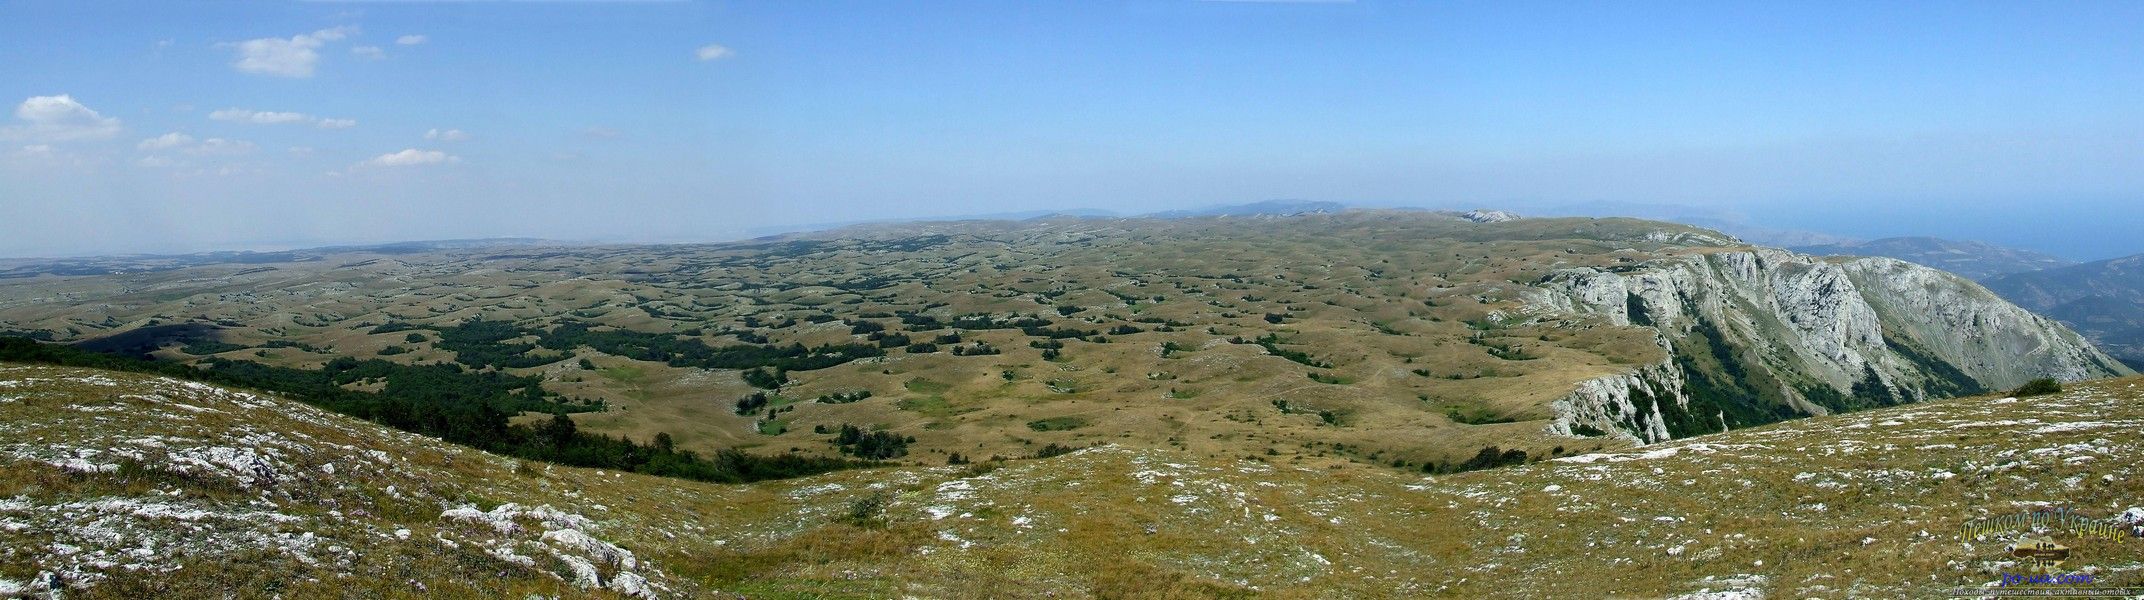 Панорама Караби-яйлы